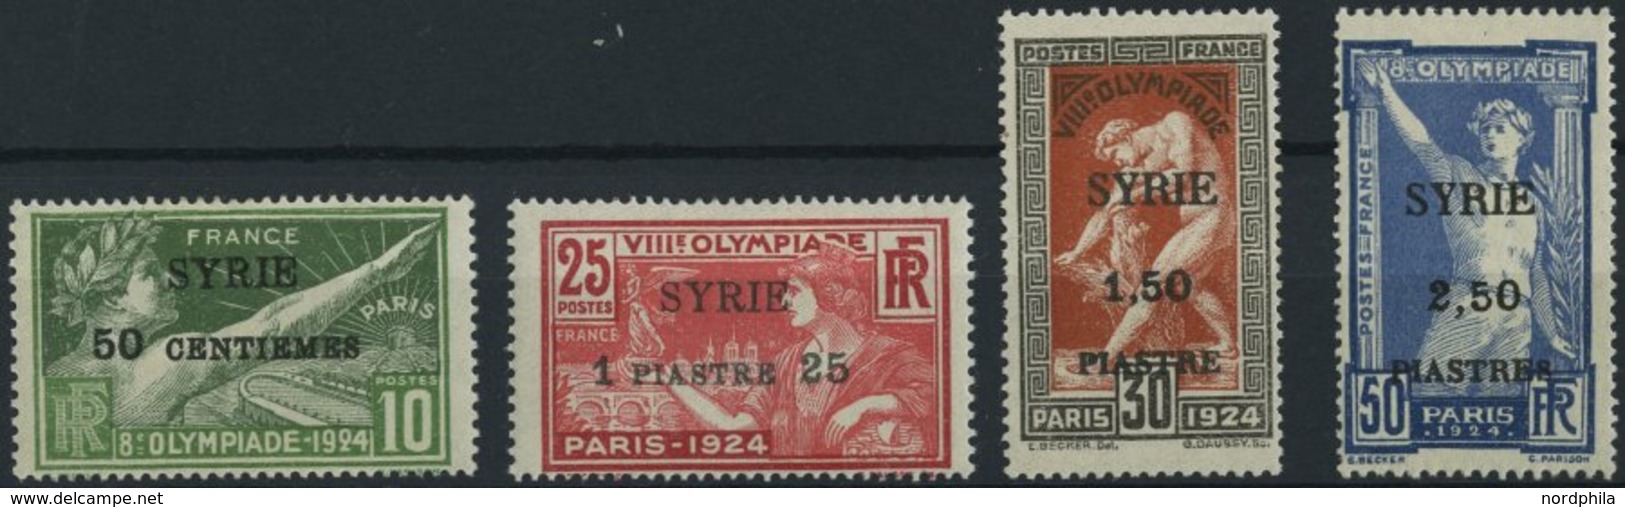 SYRIEN 227-30 *, 1924, Olympische Spiele, Aufdruck SYRIE, Falzreste, üblich Gezähnter Prachtsatz, Mi. 220.- - Syria